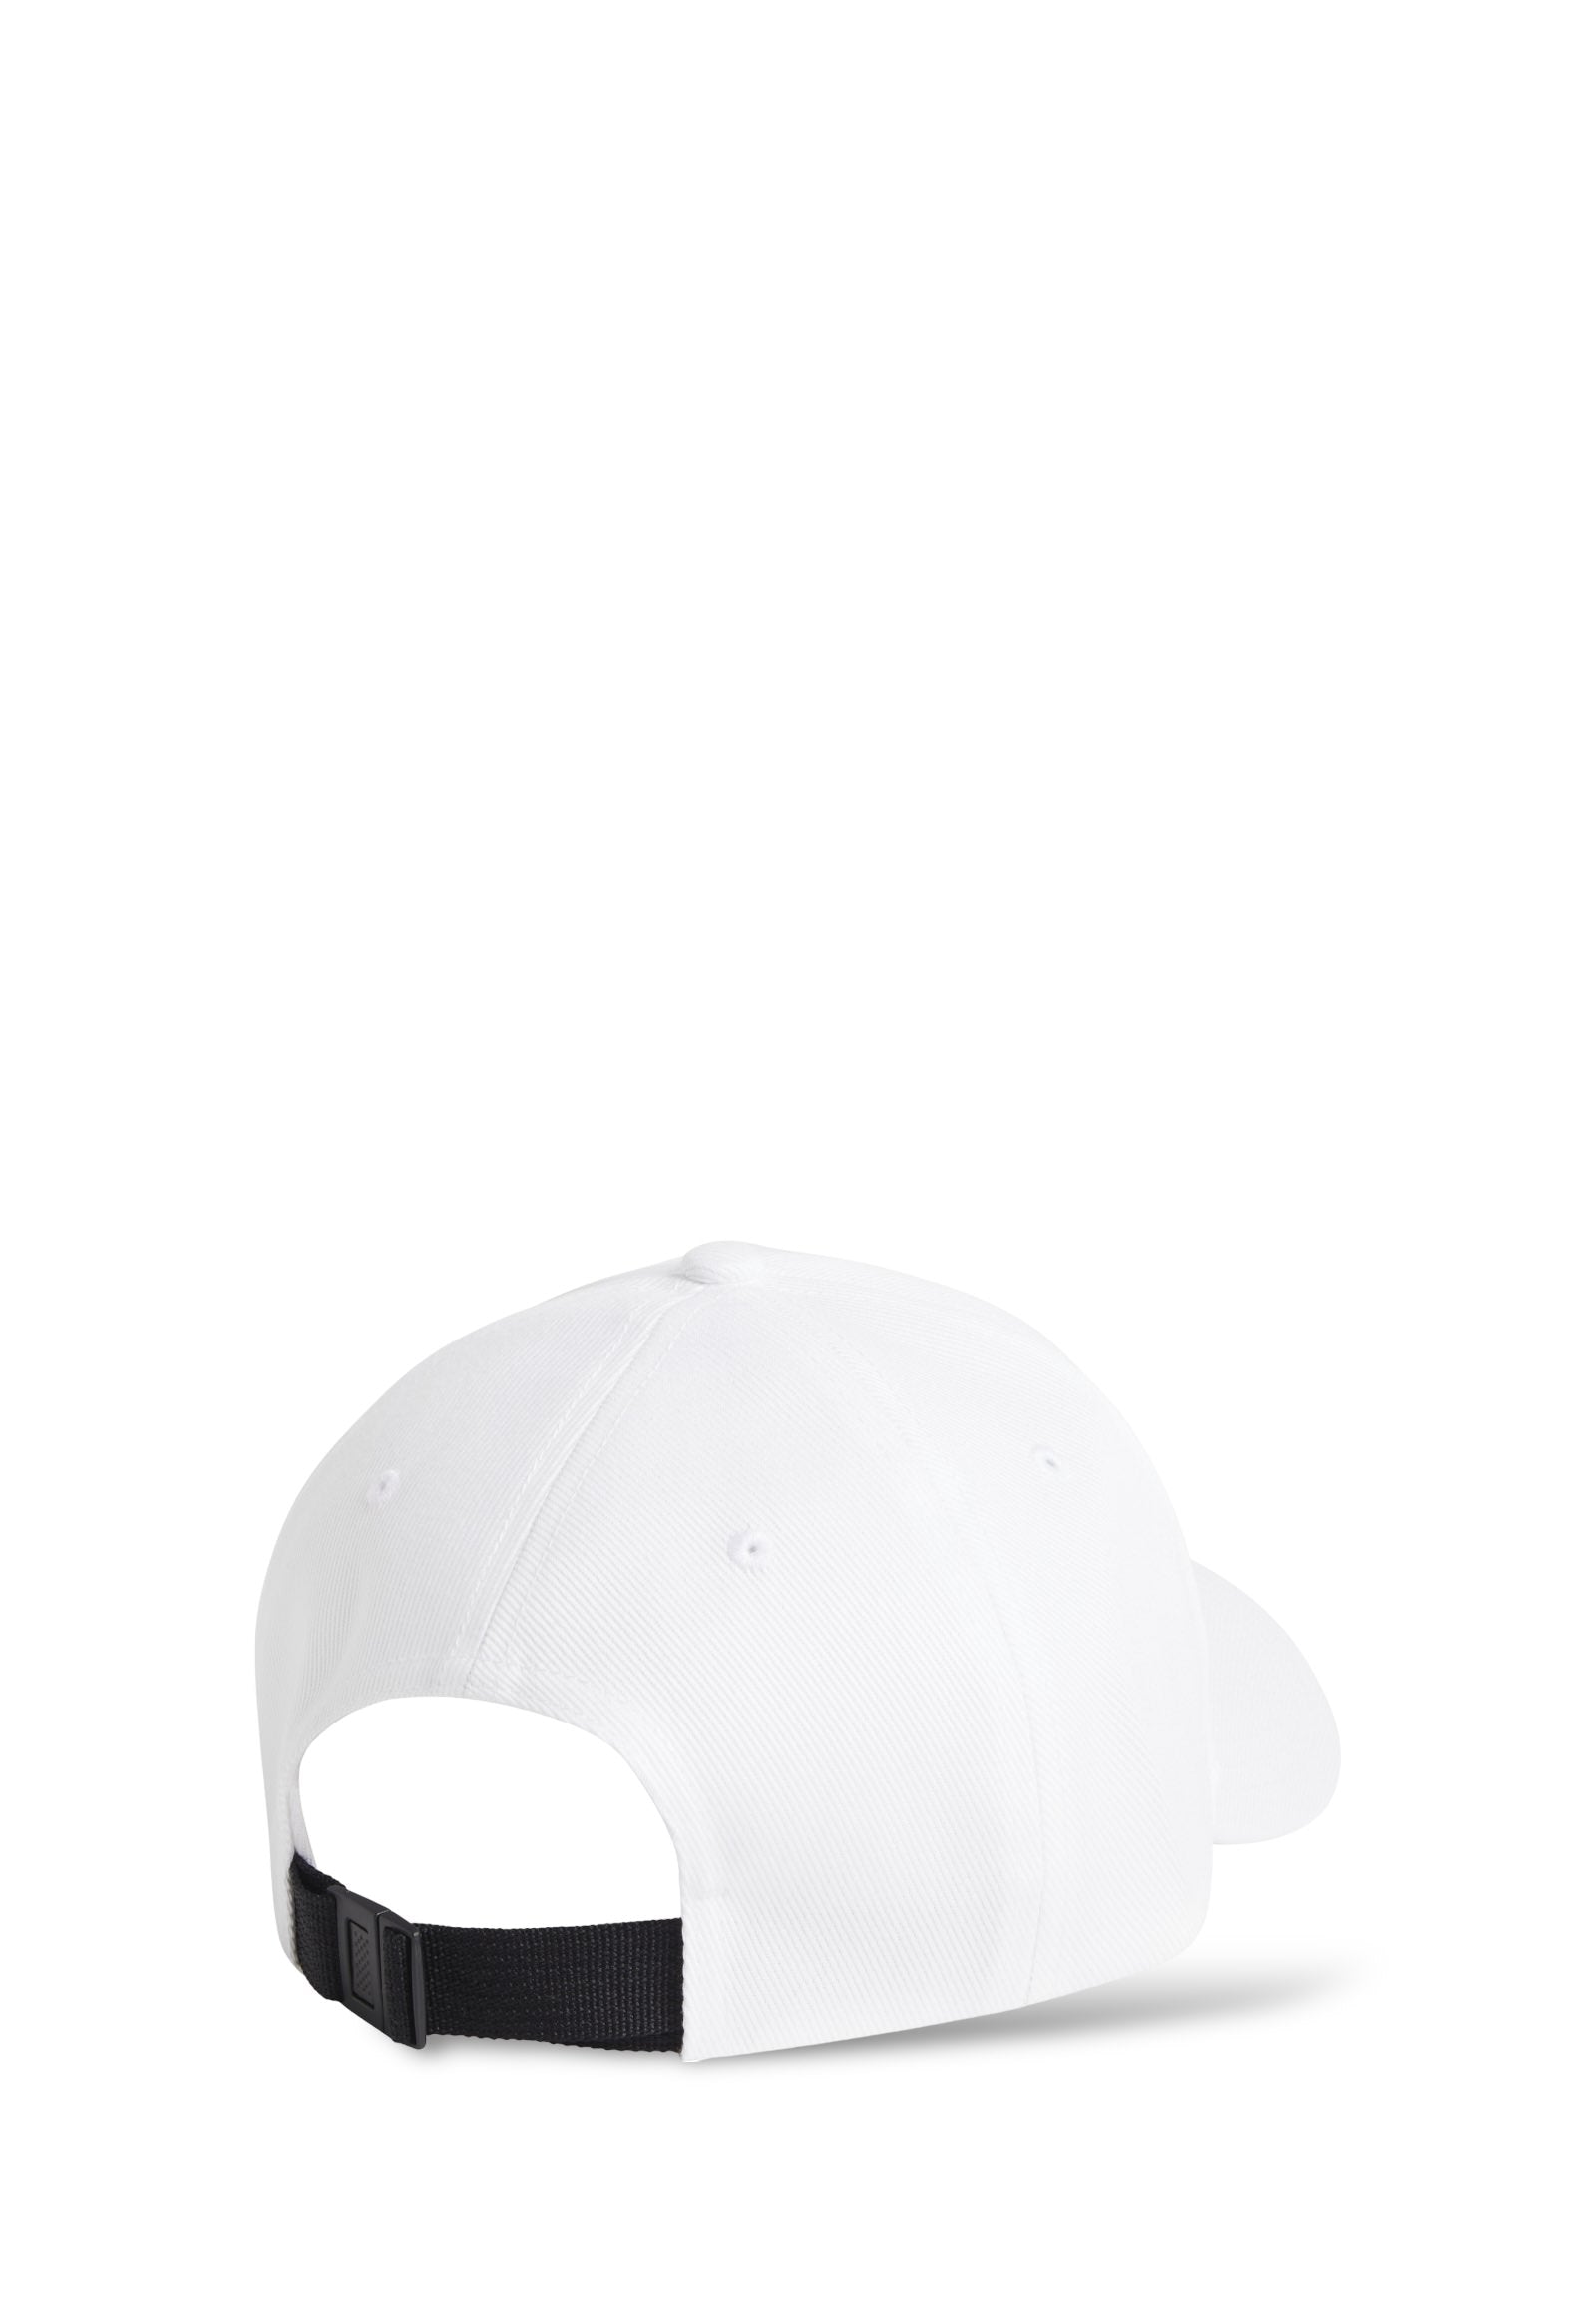 Baseball Hat K50k511805 White